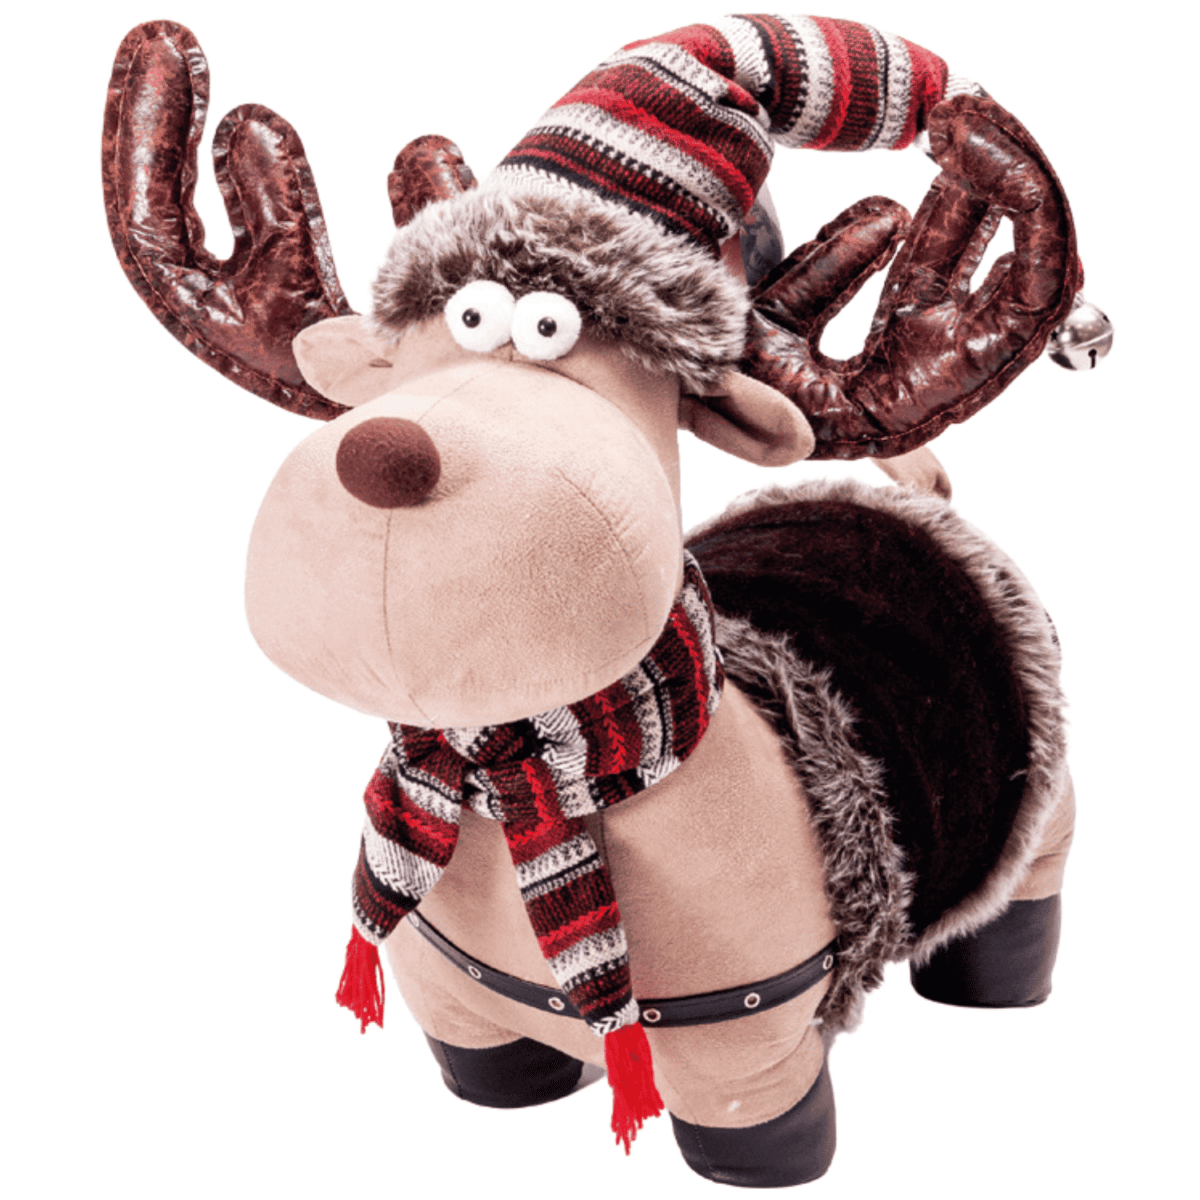 renna-rudolf-60-cm-cavalluccio-pupazzi-giochi-natale-decorazioni-natalizie